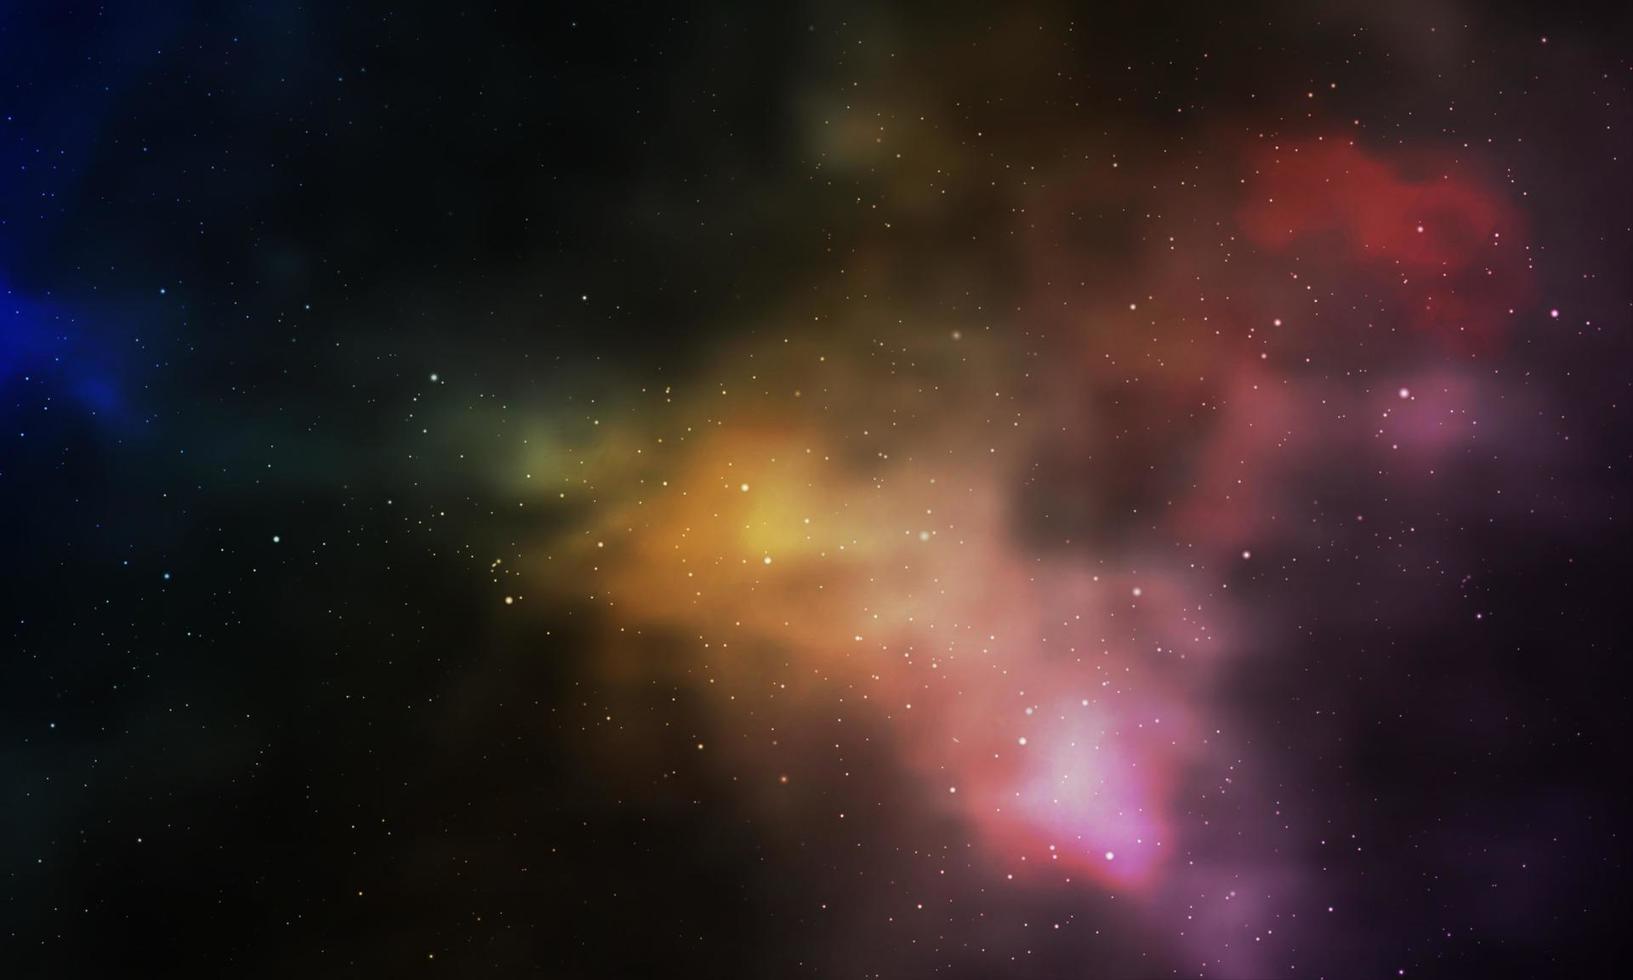 realistico universo infinito notte stellata nebulosa brillante polvere di stelle colore magico sfondo galassia vettore